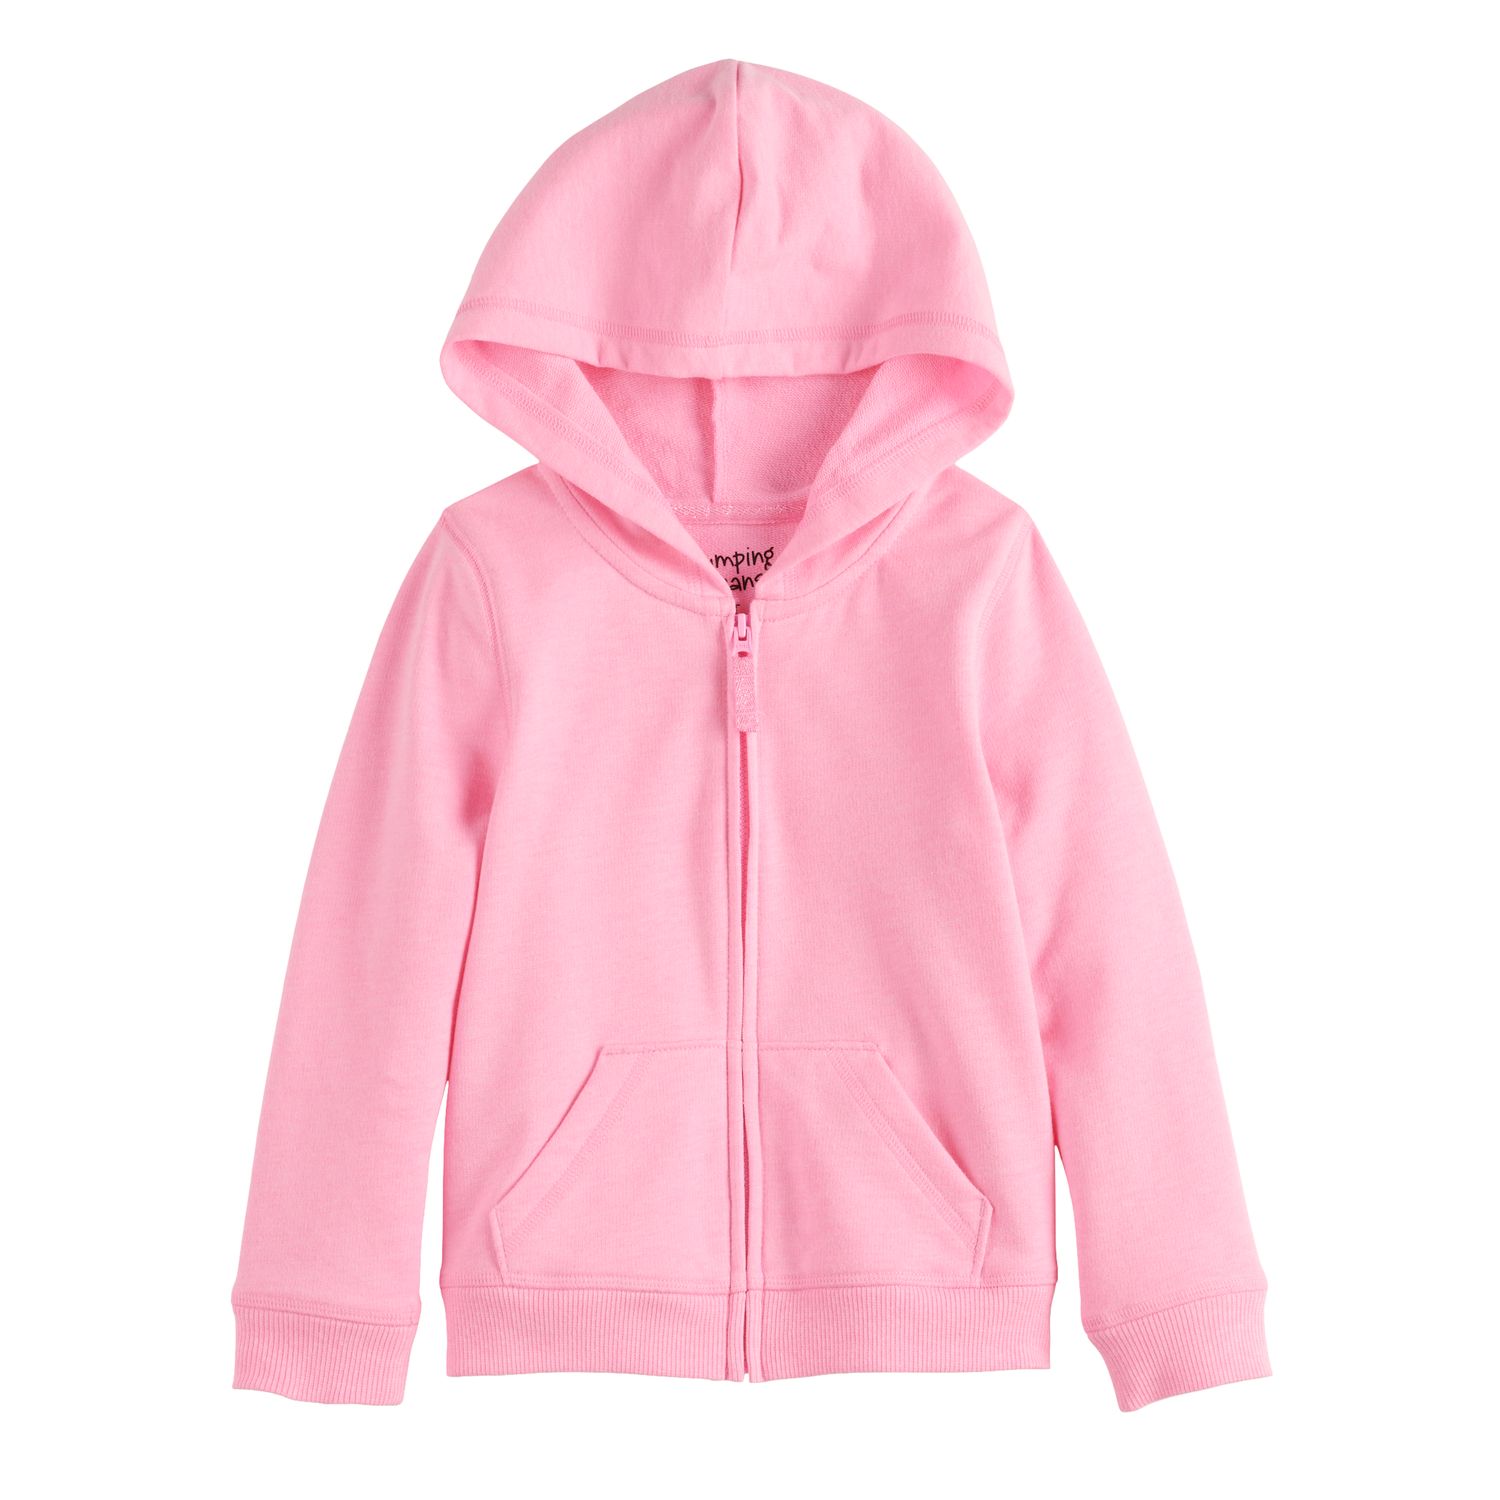 pink fleece zip up jacket